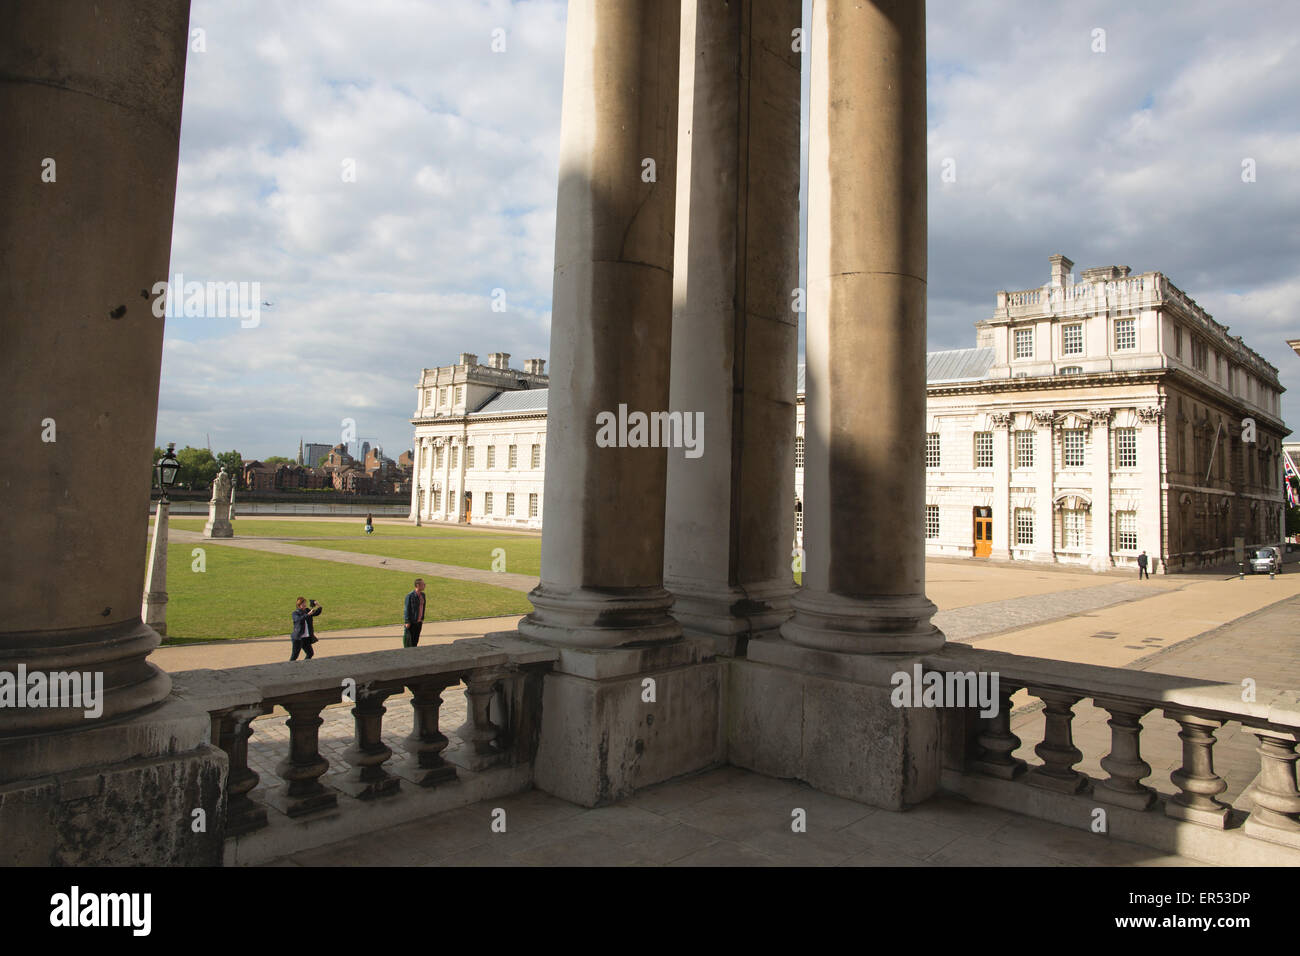 Queen Anne Corte vista attraverso i pilastri di King William corte, Old Royal Naval College, Marittime Greenwich, London, Regno Unito Foto Stock